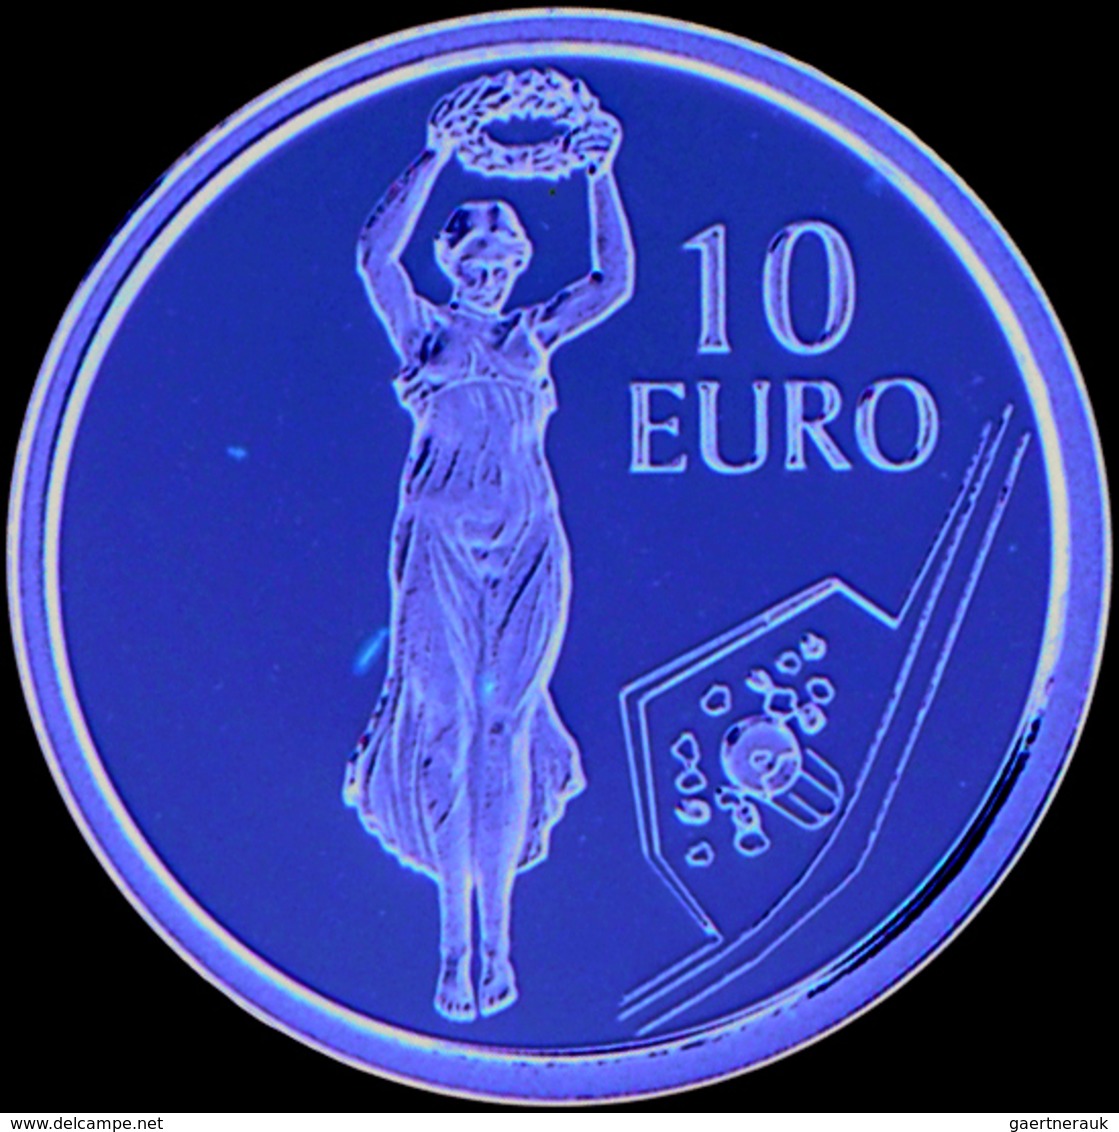 Luxemburg - Anlagegold: Lot 4 x 10 Euro Gold 2004,2006,2011,2013, Gold 999, je 3,1 g, alle mit Zerti